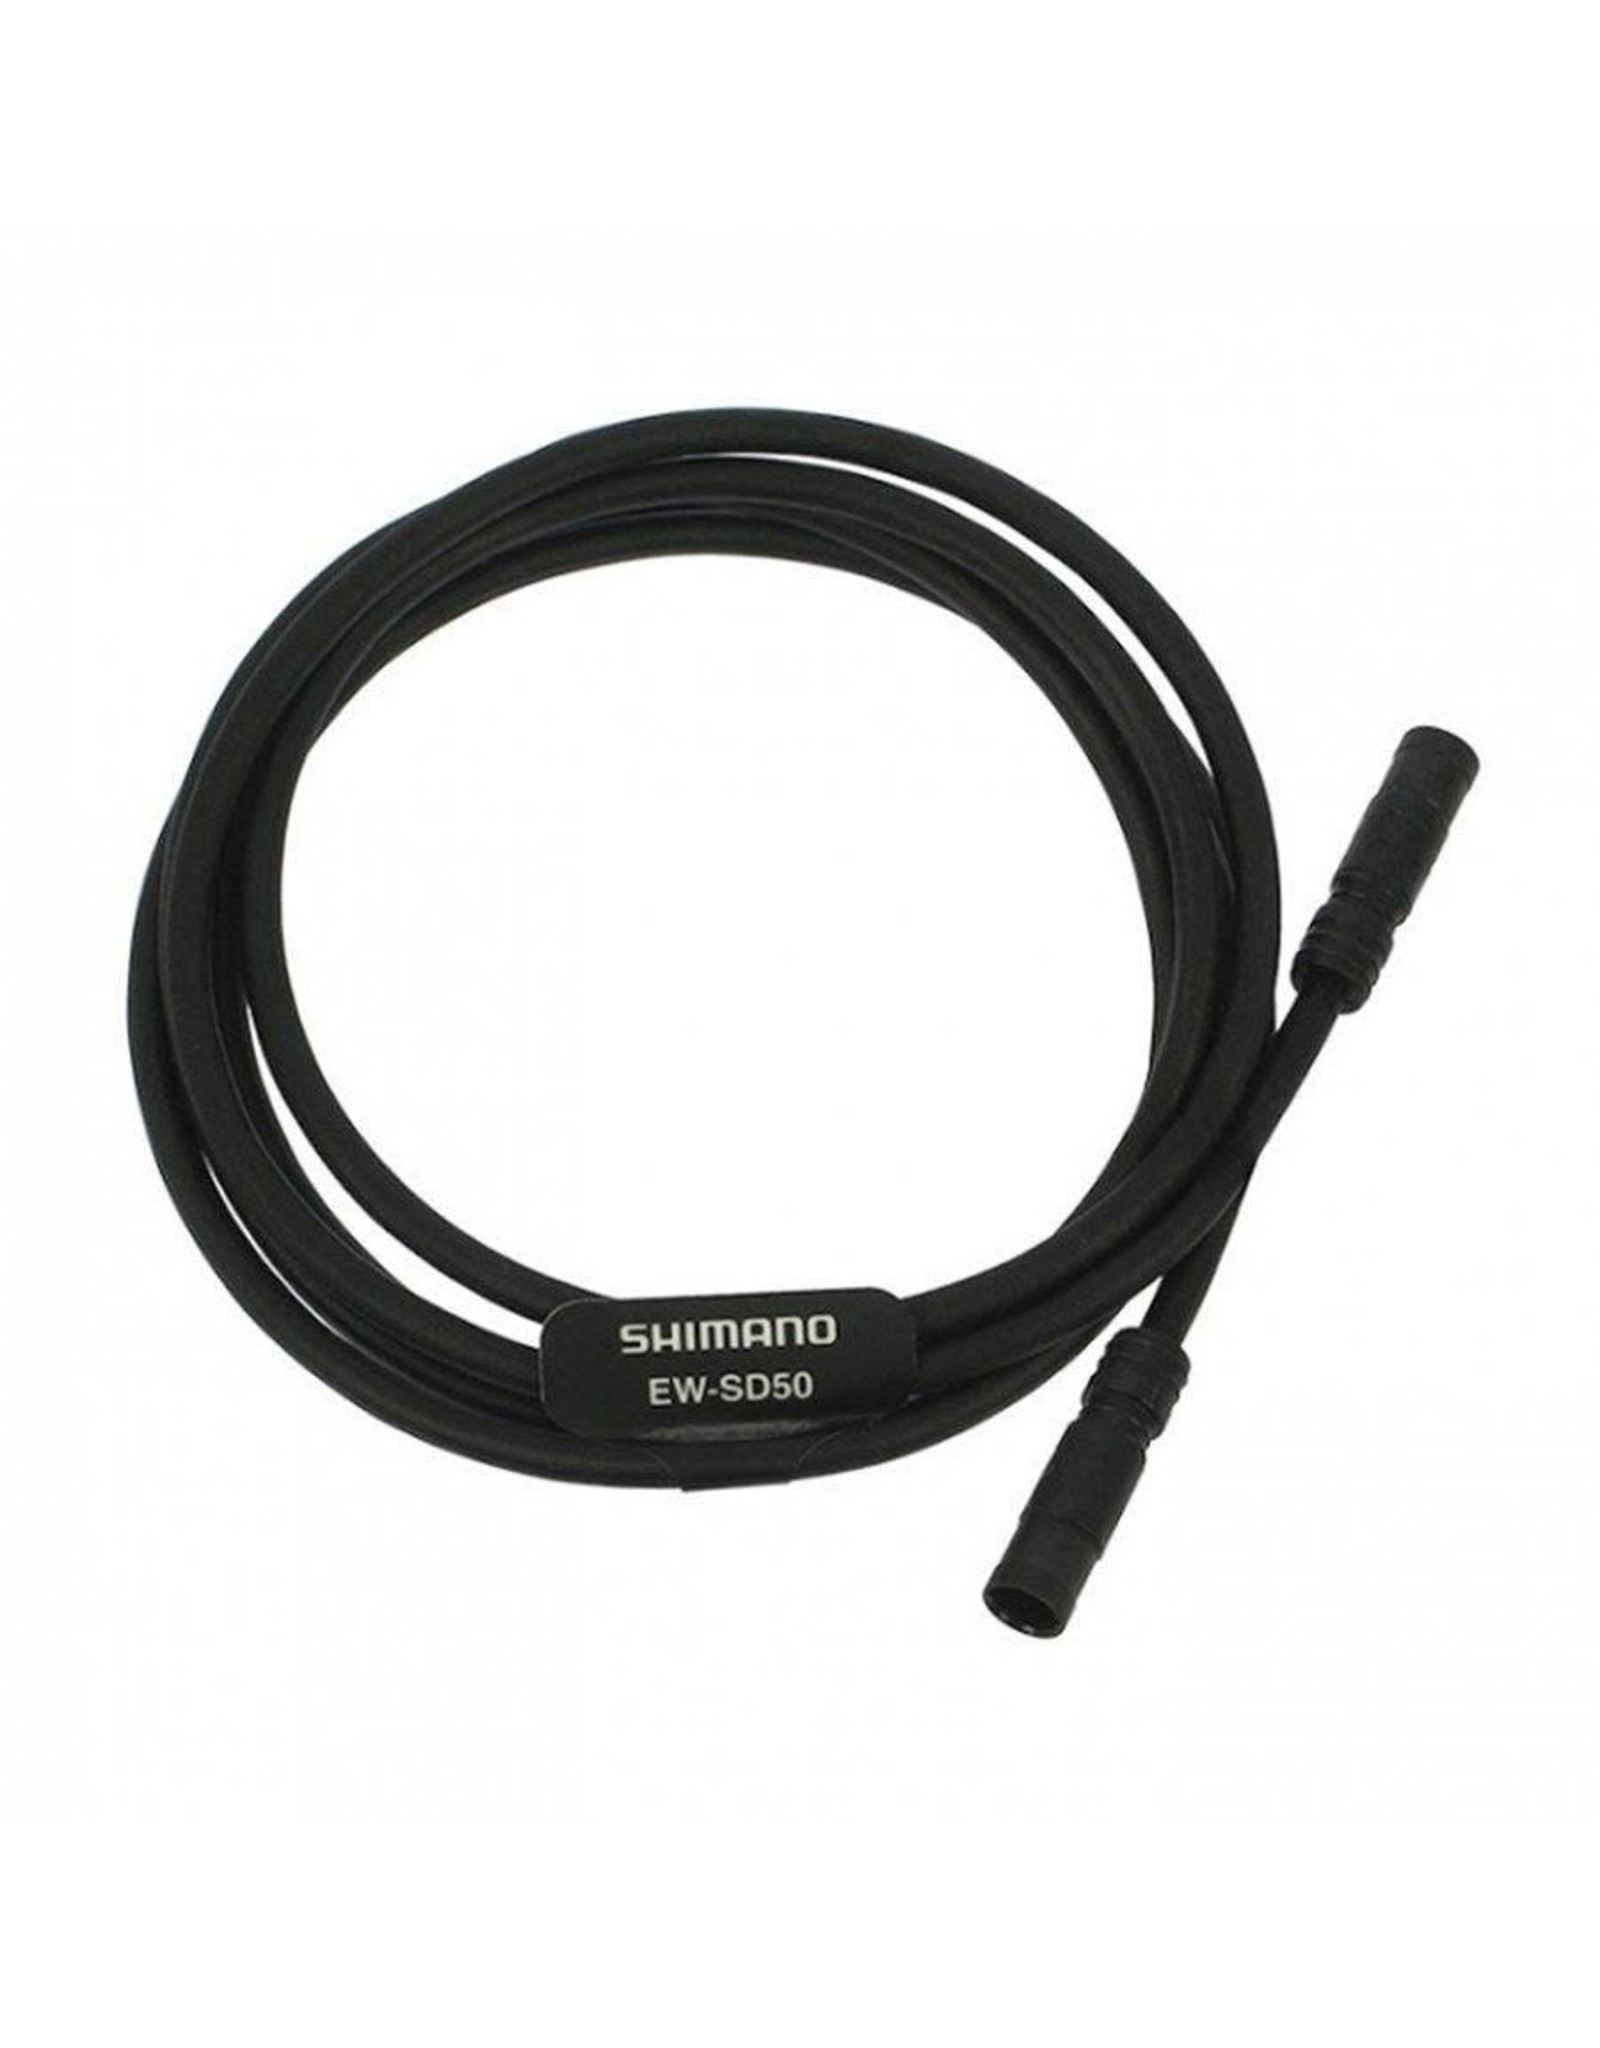 Shimano ELECTRIC WIRE, 850MM BLACK EW-SD50 FOR E-TUBE DI2